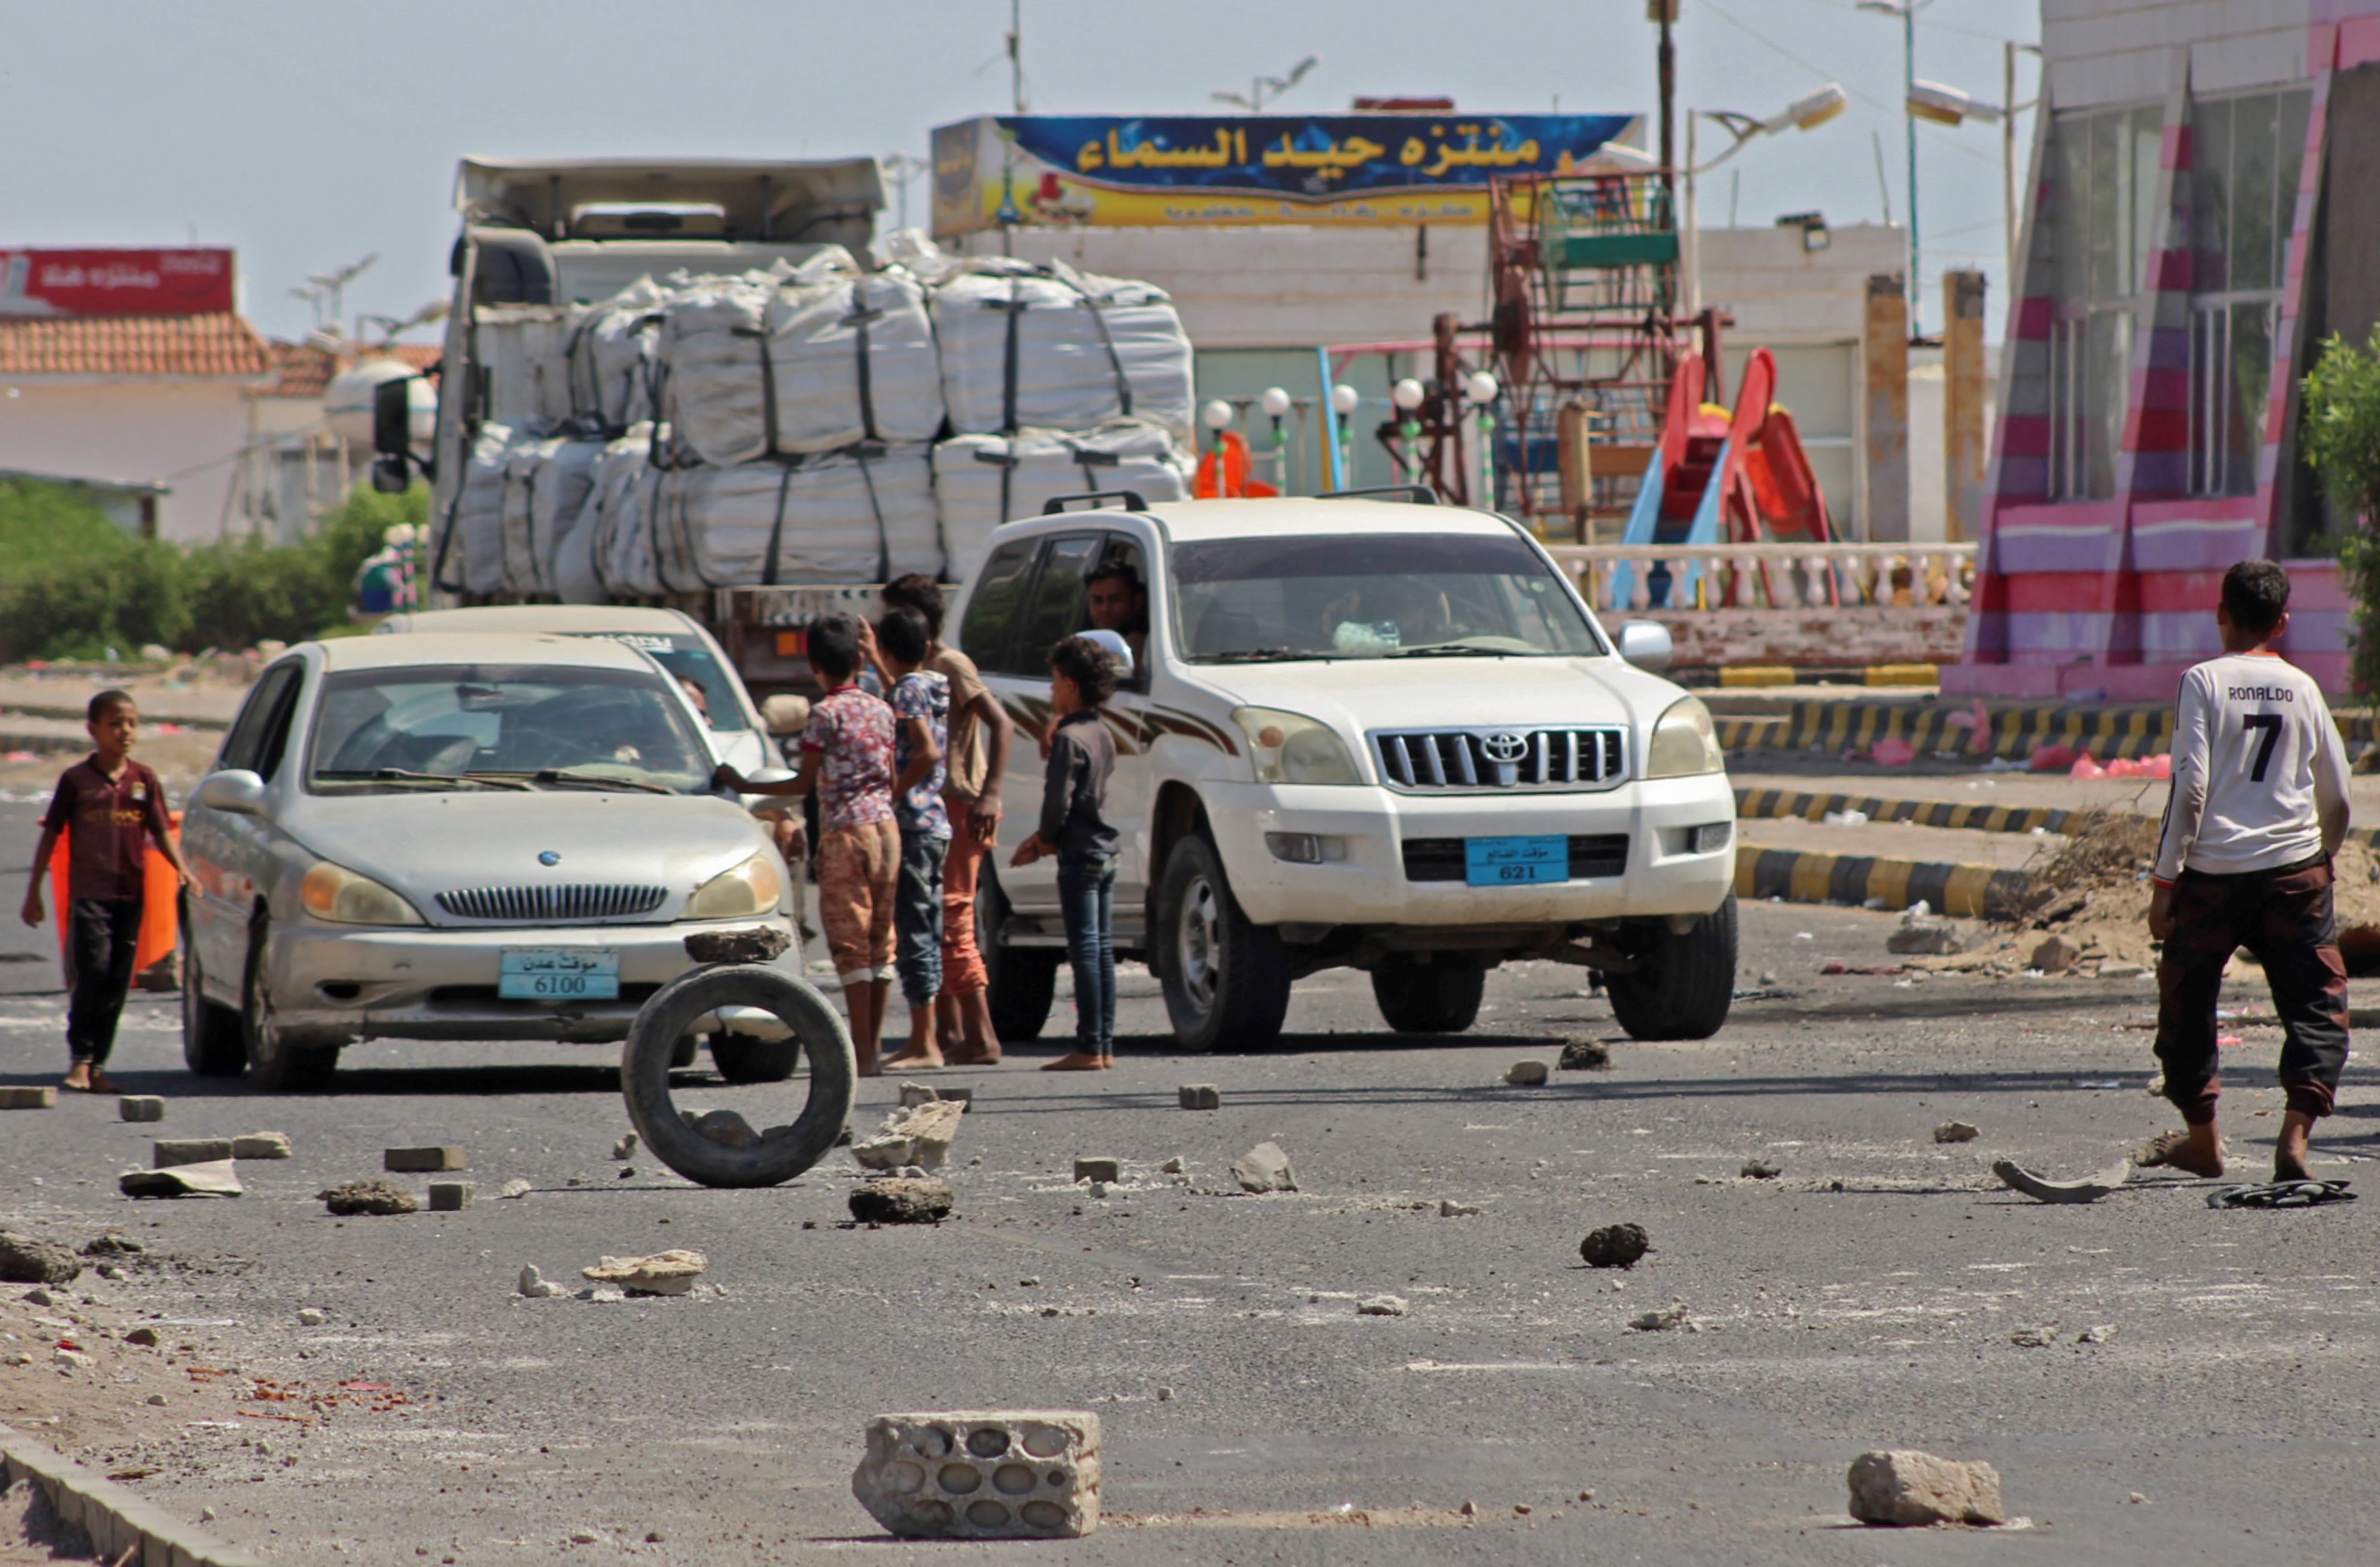 يمنيون يقطعون الطريق امام السيارات اعتراضا على تراجع العملة المحلية مقابل الدولار الأمريكى